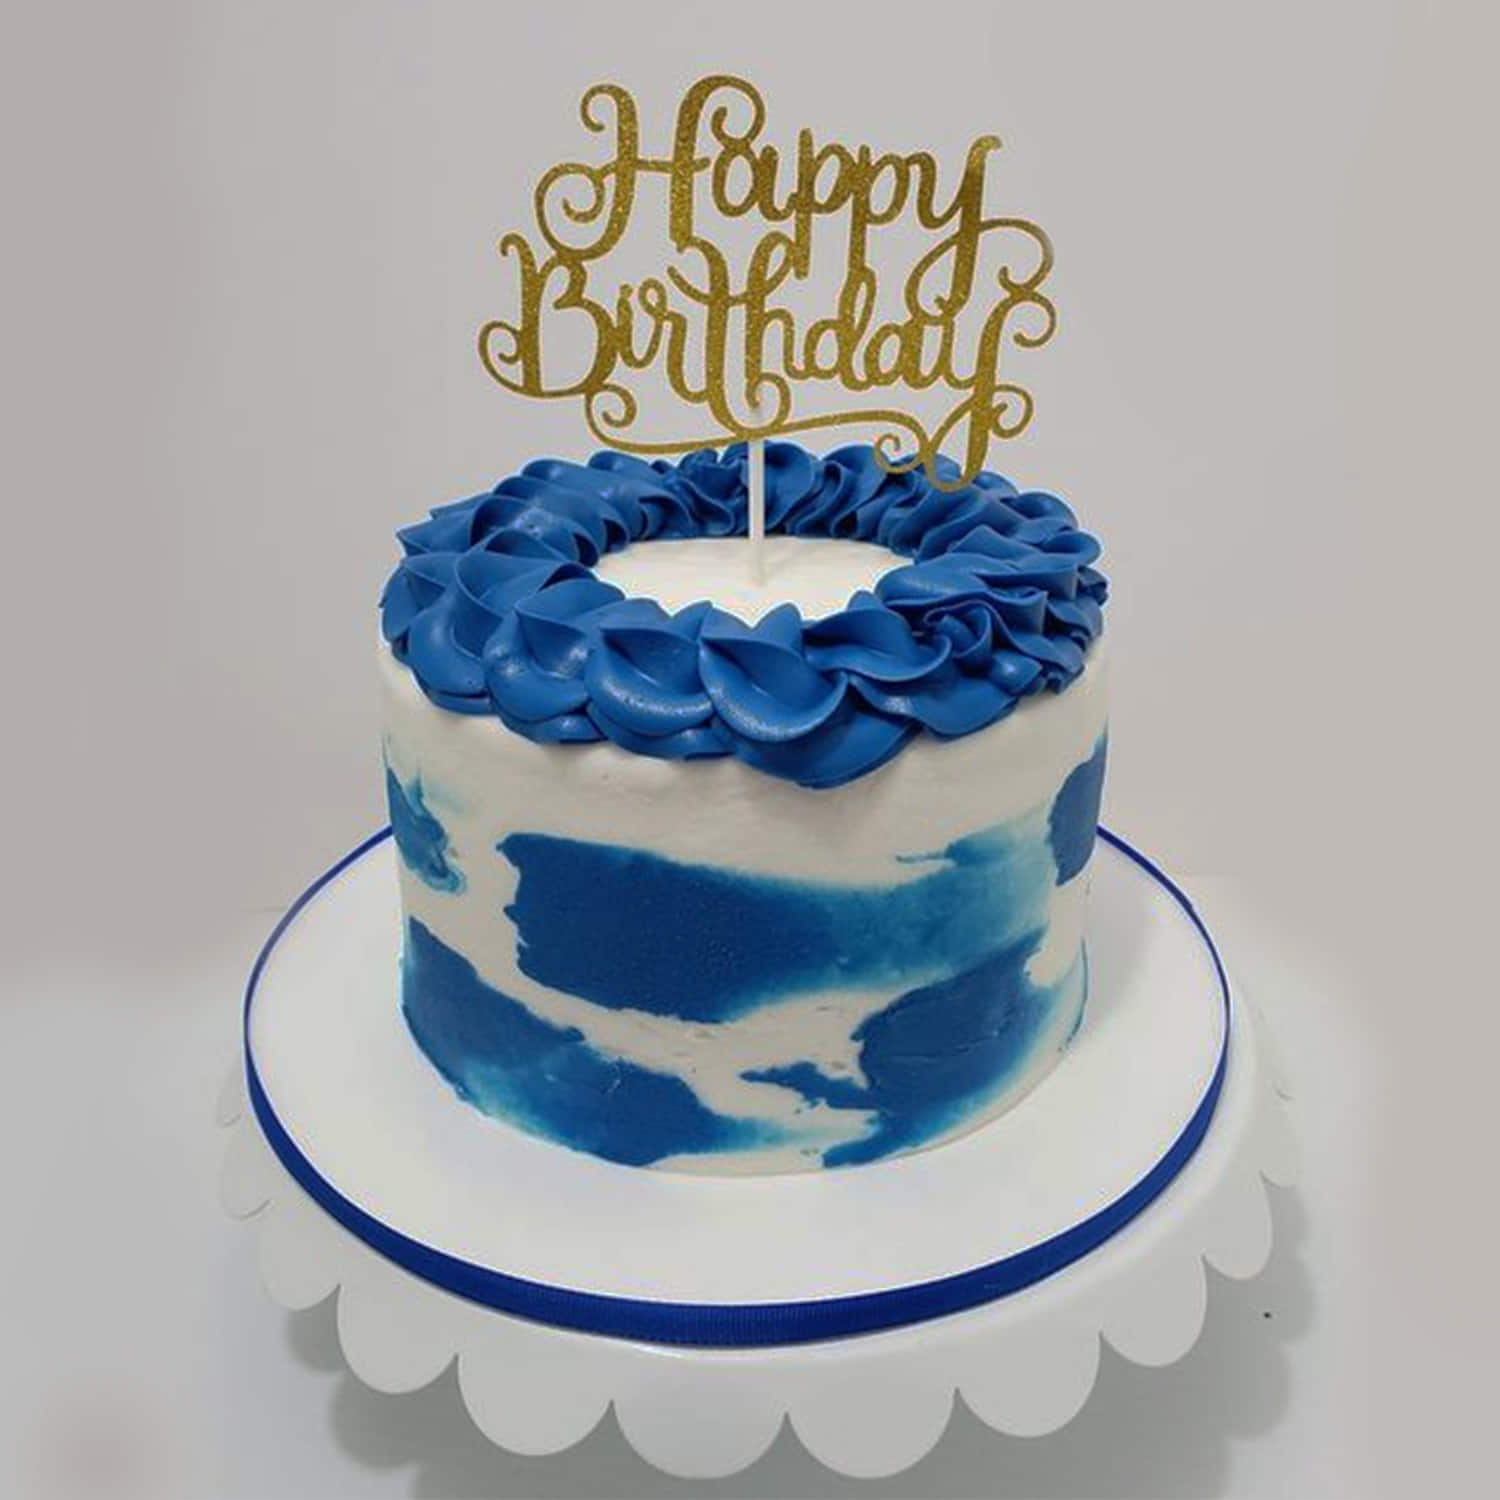 Customised Blue Cakes Singapore